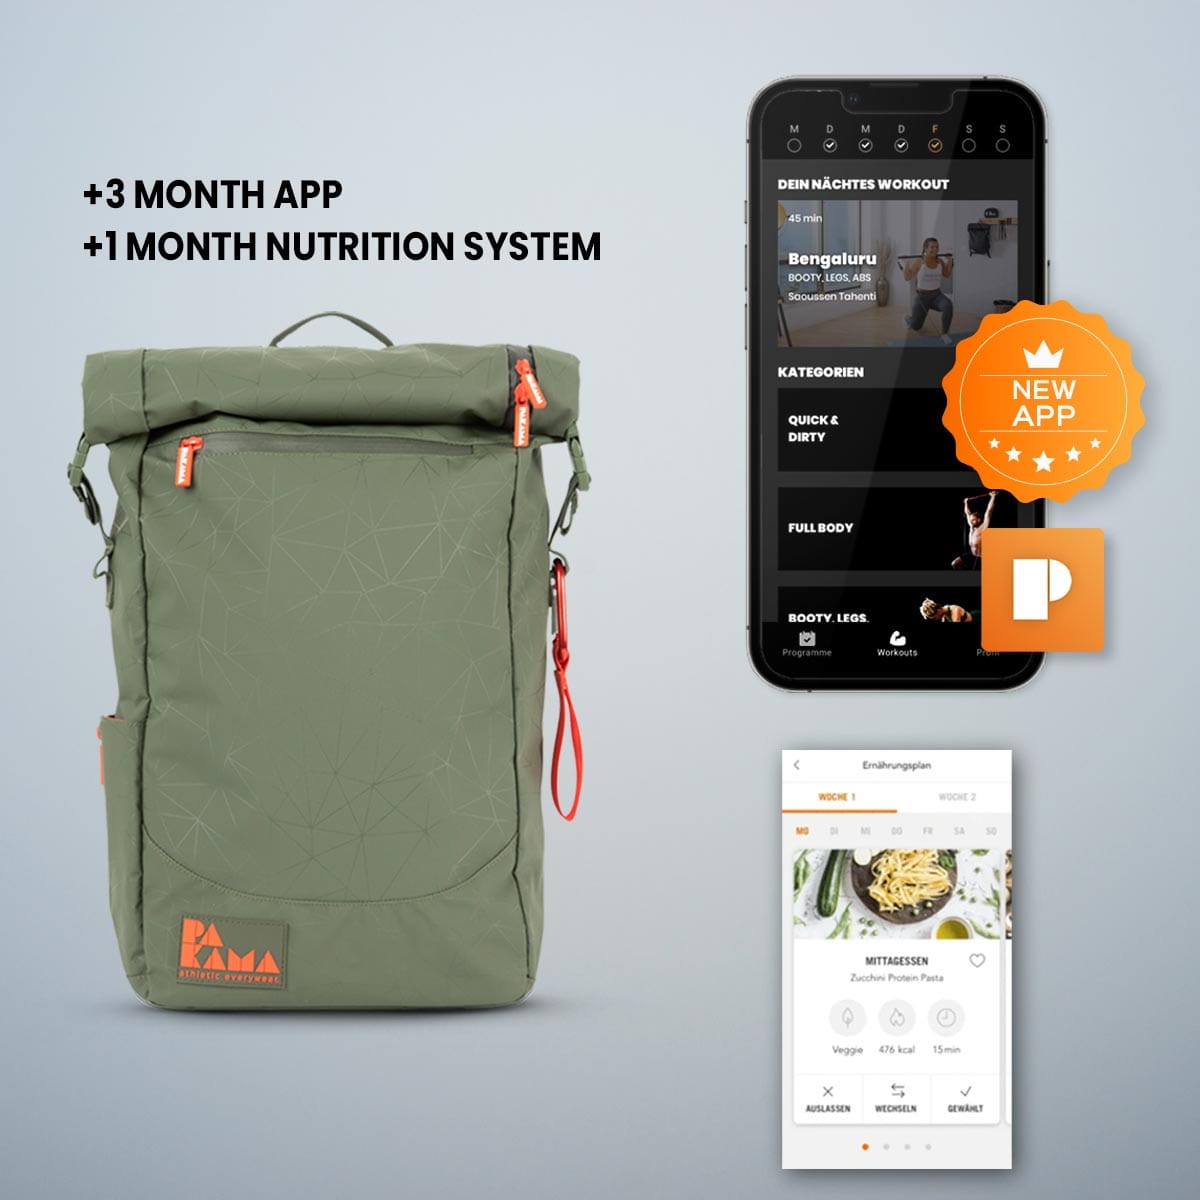 PAKAMA-fitnessrucksack-gruen-app-nutrition system